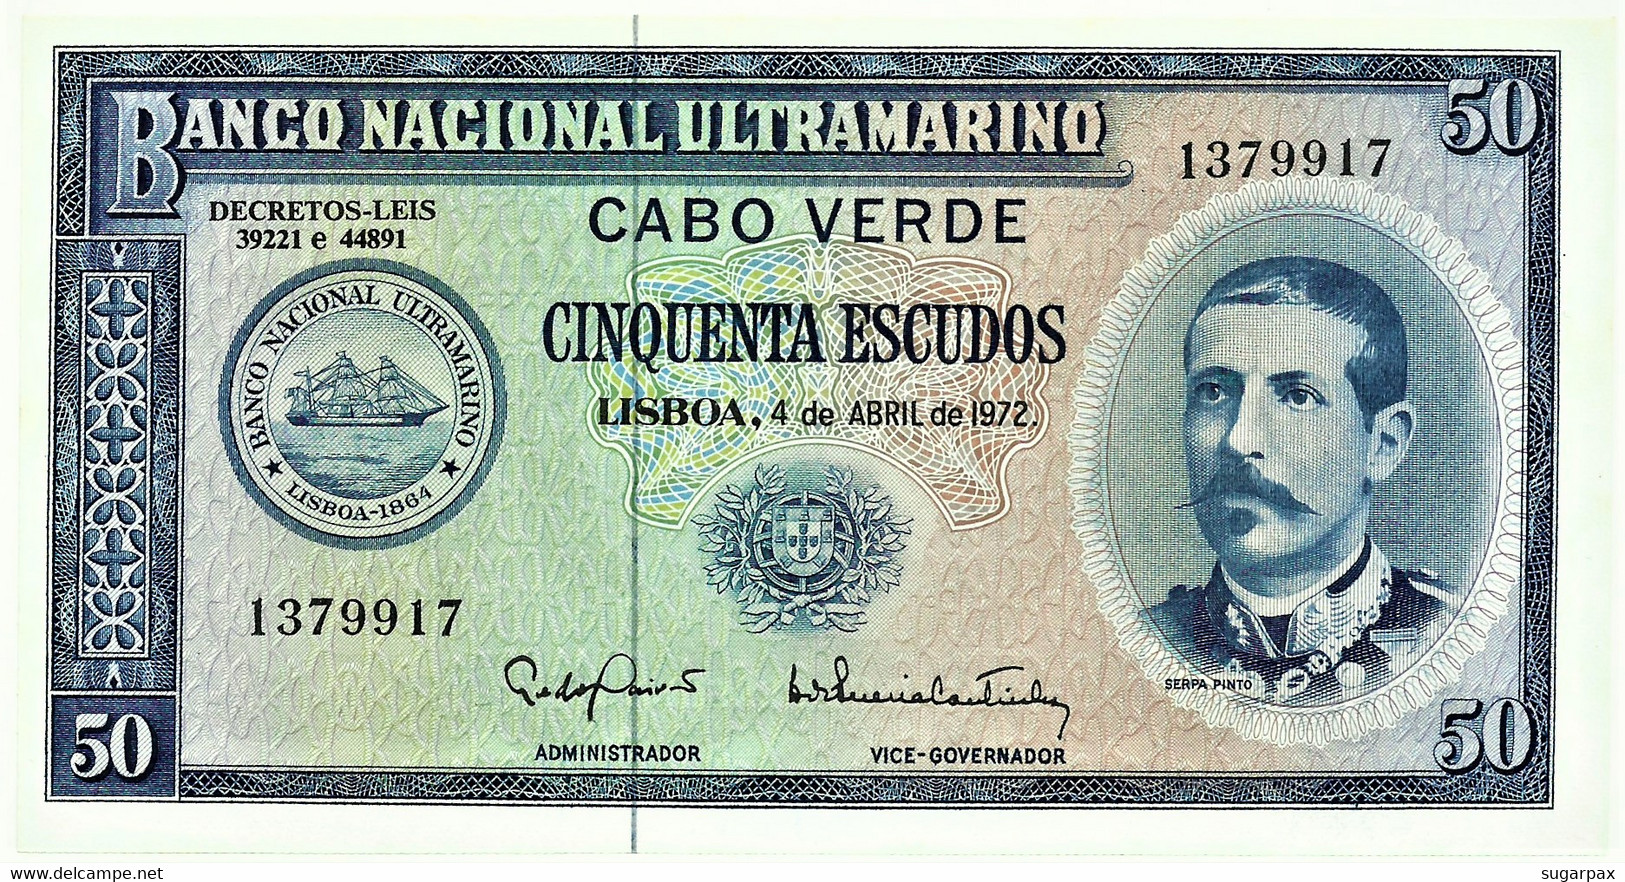 CAPE VERDE - 50 ESCUDOS - 04.04.1972 - Pick 53 - Unc. - Serpa Pinto - Portugal Cabo - Cap Verde